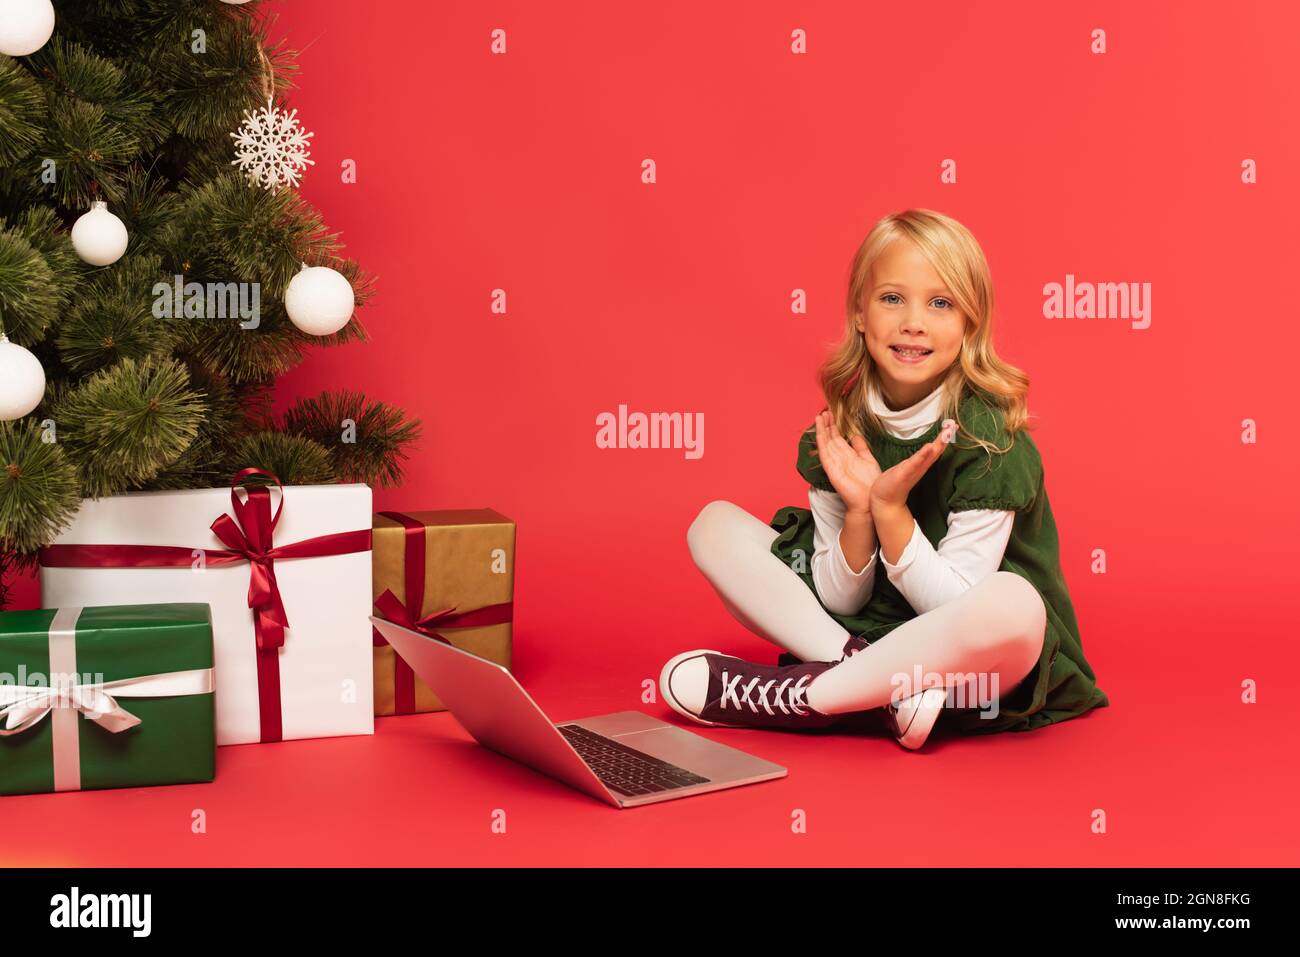 bambino felice che stringe le mani vicino al portatile e i regali sotto l'albero di natale su rosso Foto Stock